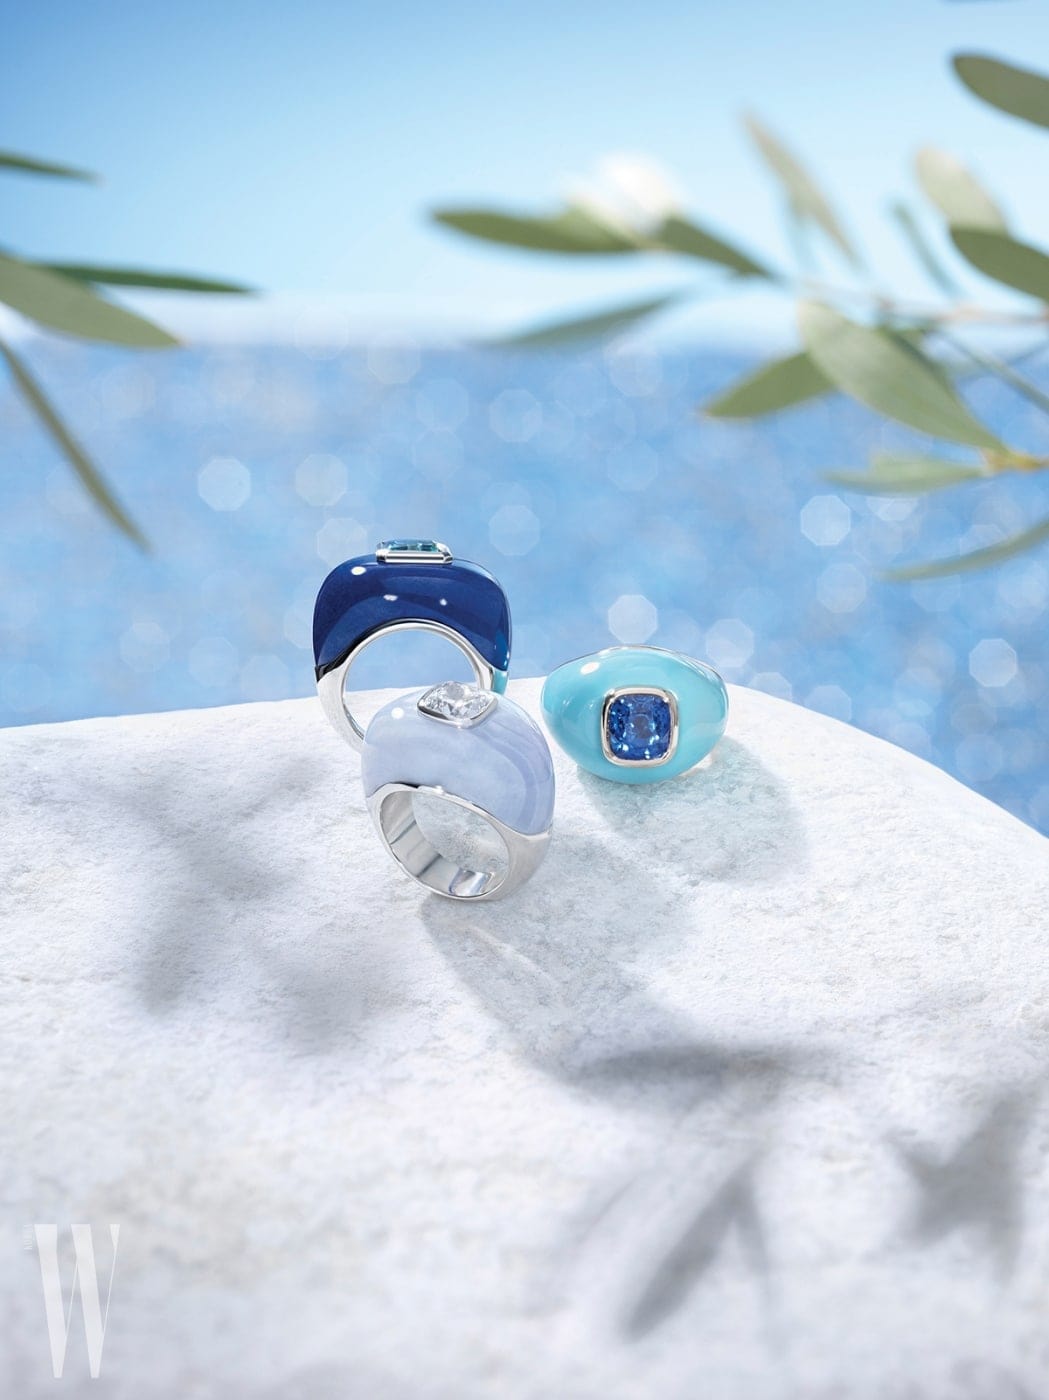 다이아몬드, 파라비아 투르말린, 터키석 등으로 다양한 바다색을 표현한 반지들.